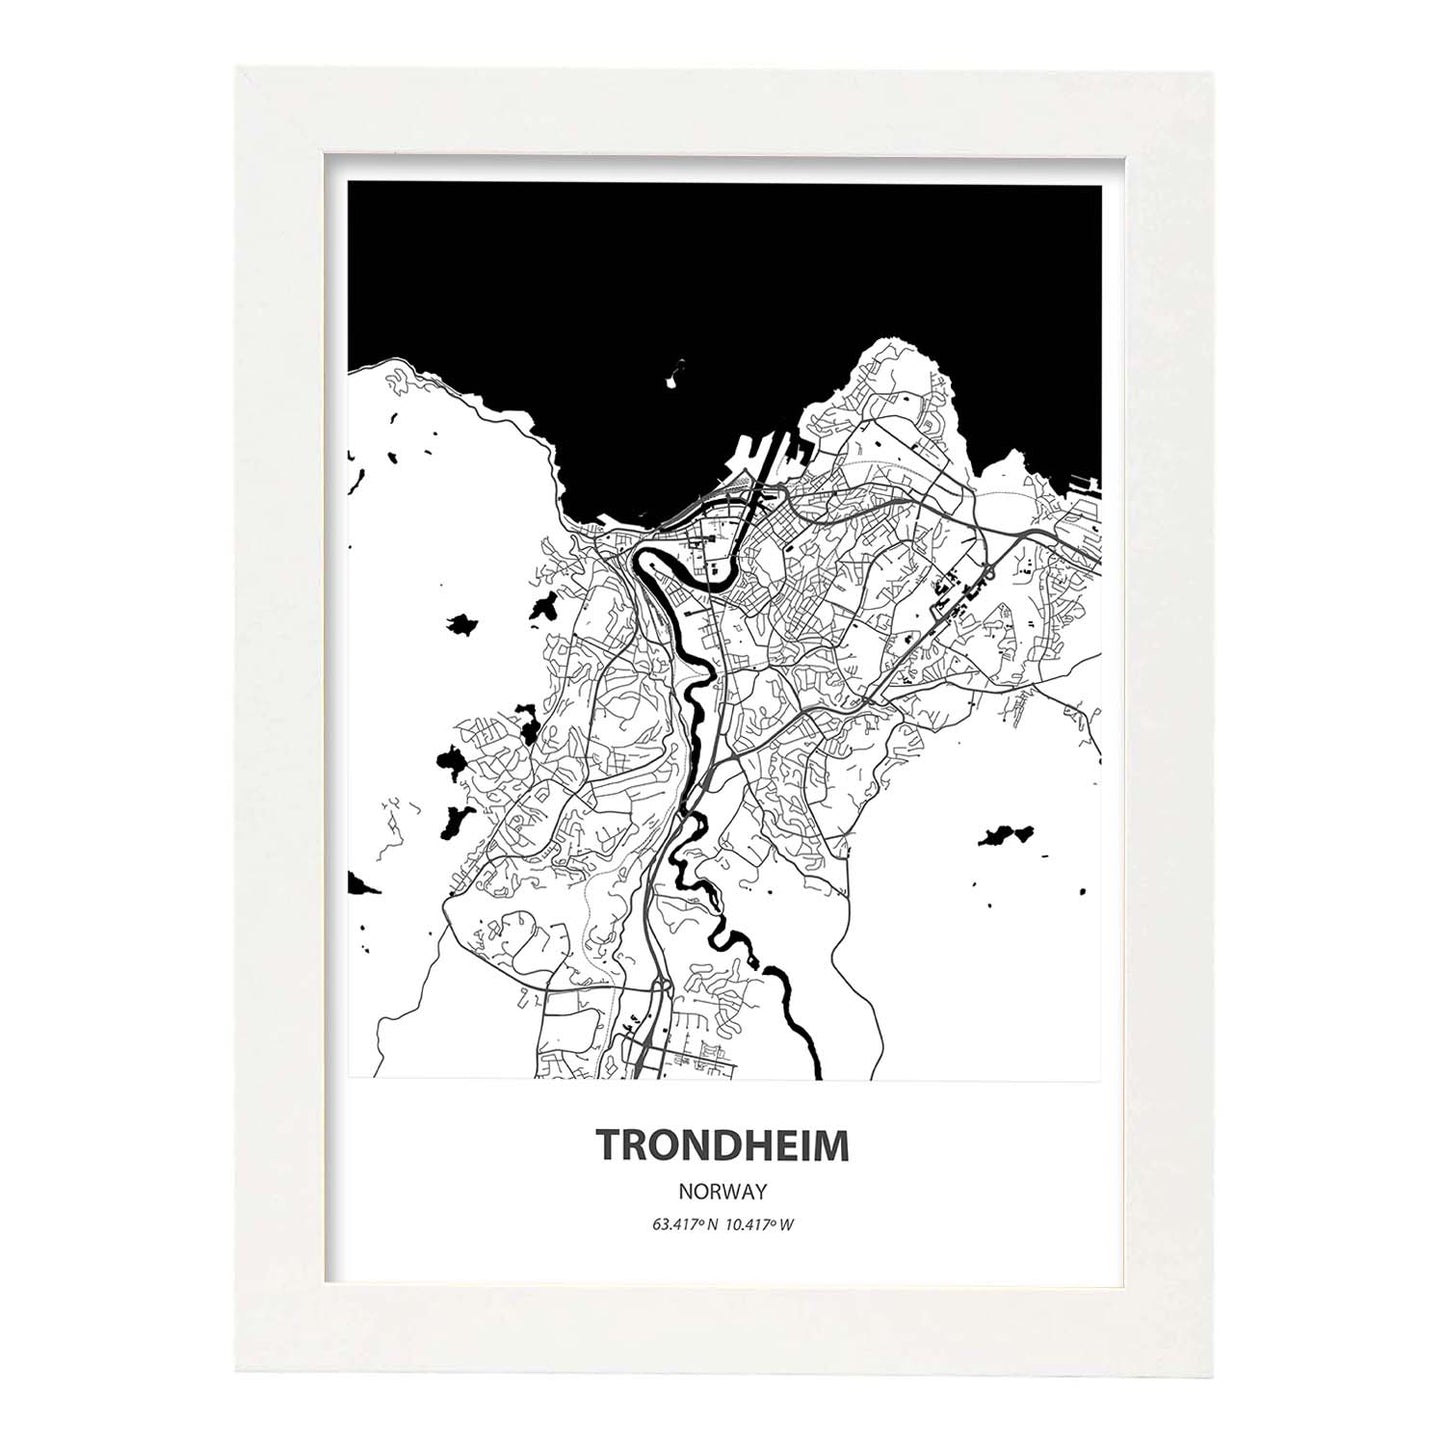 Poster con mapa de Trondheim - Noruega. Láminas de ciudades del norte de Europa con mares y ríos en color negro.-Artwork-Nacnic-A4-Marco Blanco-Nacnic Estudio SL